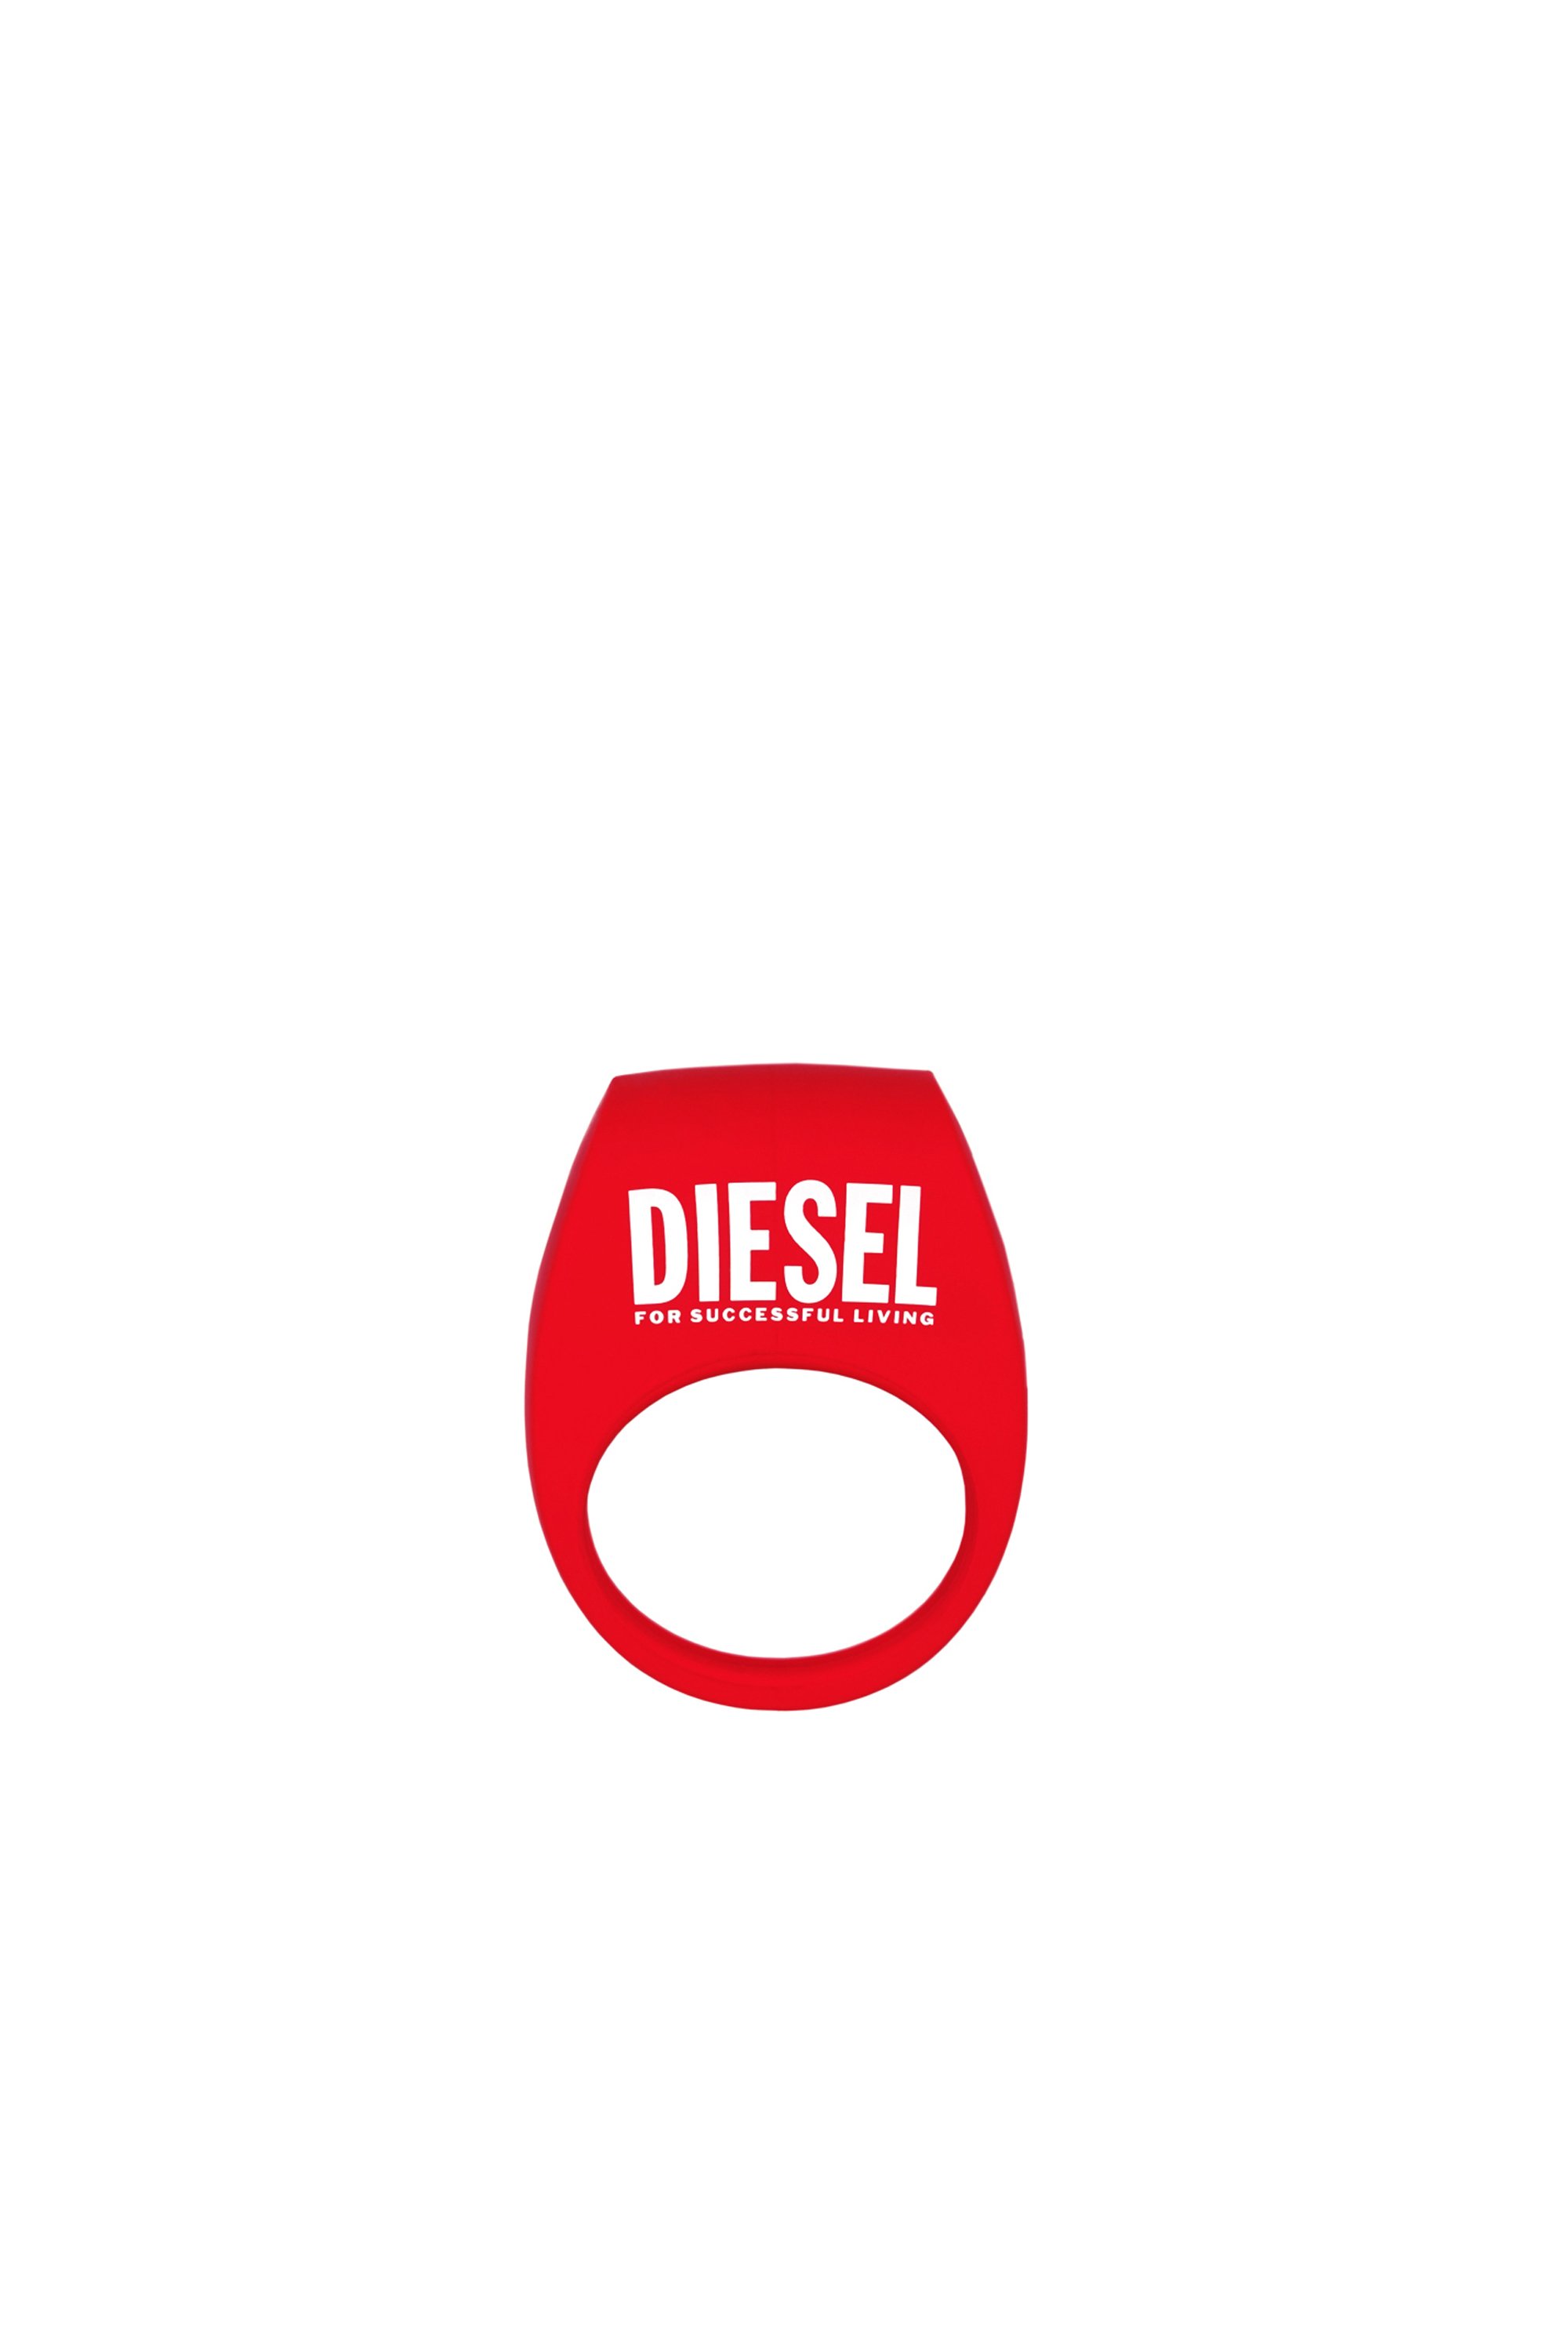 Diesel - 8694 TOR 2 X DIESEL, Rojo - Image 2